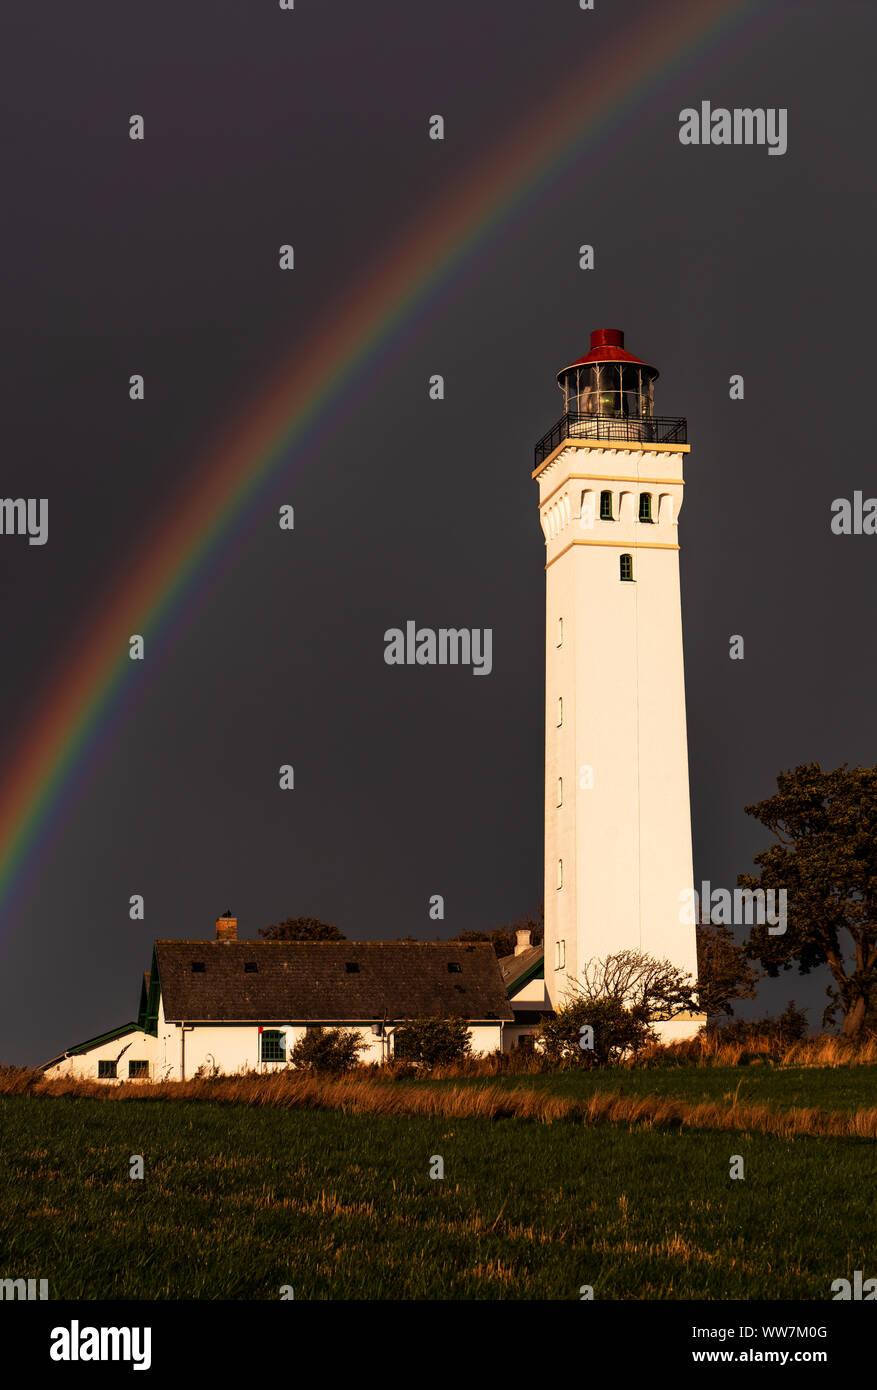 Regenbogen über den Leuchtturm Keldsnor, Insel Langeland, Dänemark Stockfoto